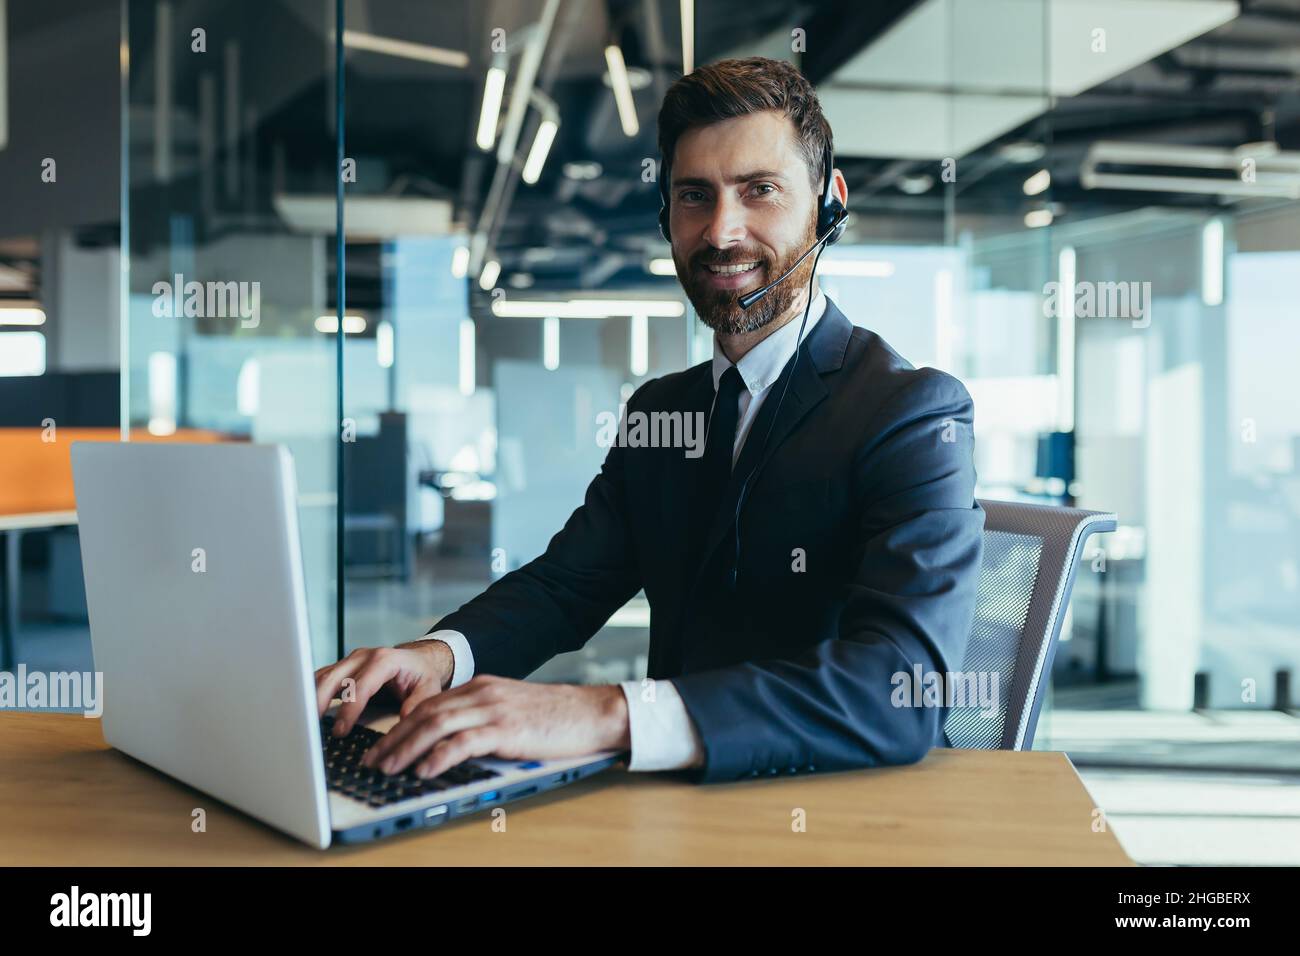 Ein Mitarbeiter des Callcenters schaut auf die Kamera und lächelt nutzt ein Headset für ein Video dink, ein Geschäftsmann macht ein Online-Meeting mit einem Laptop Stockfoto